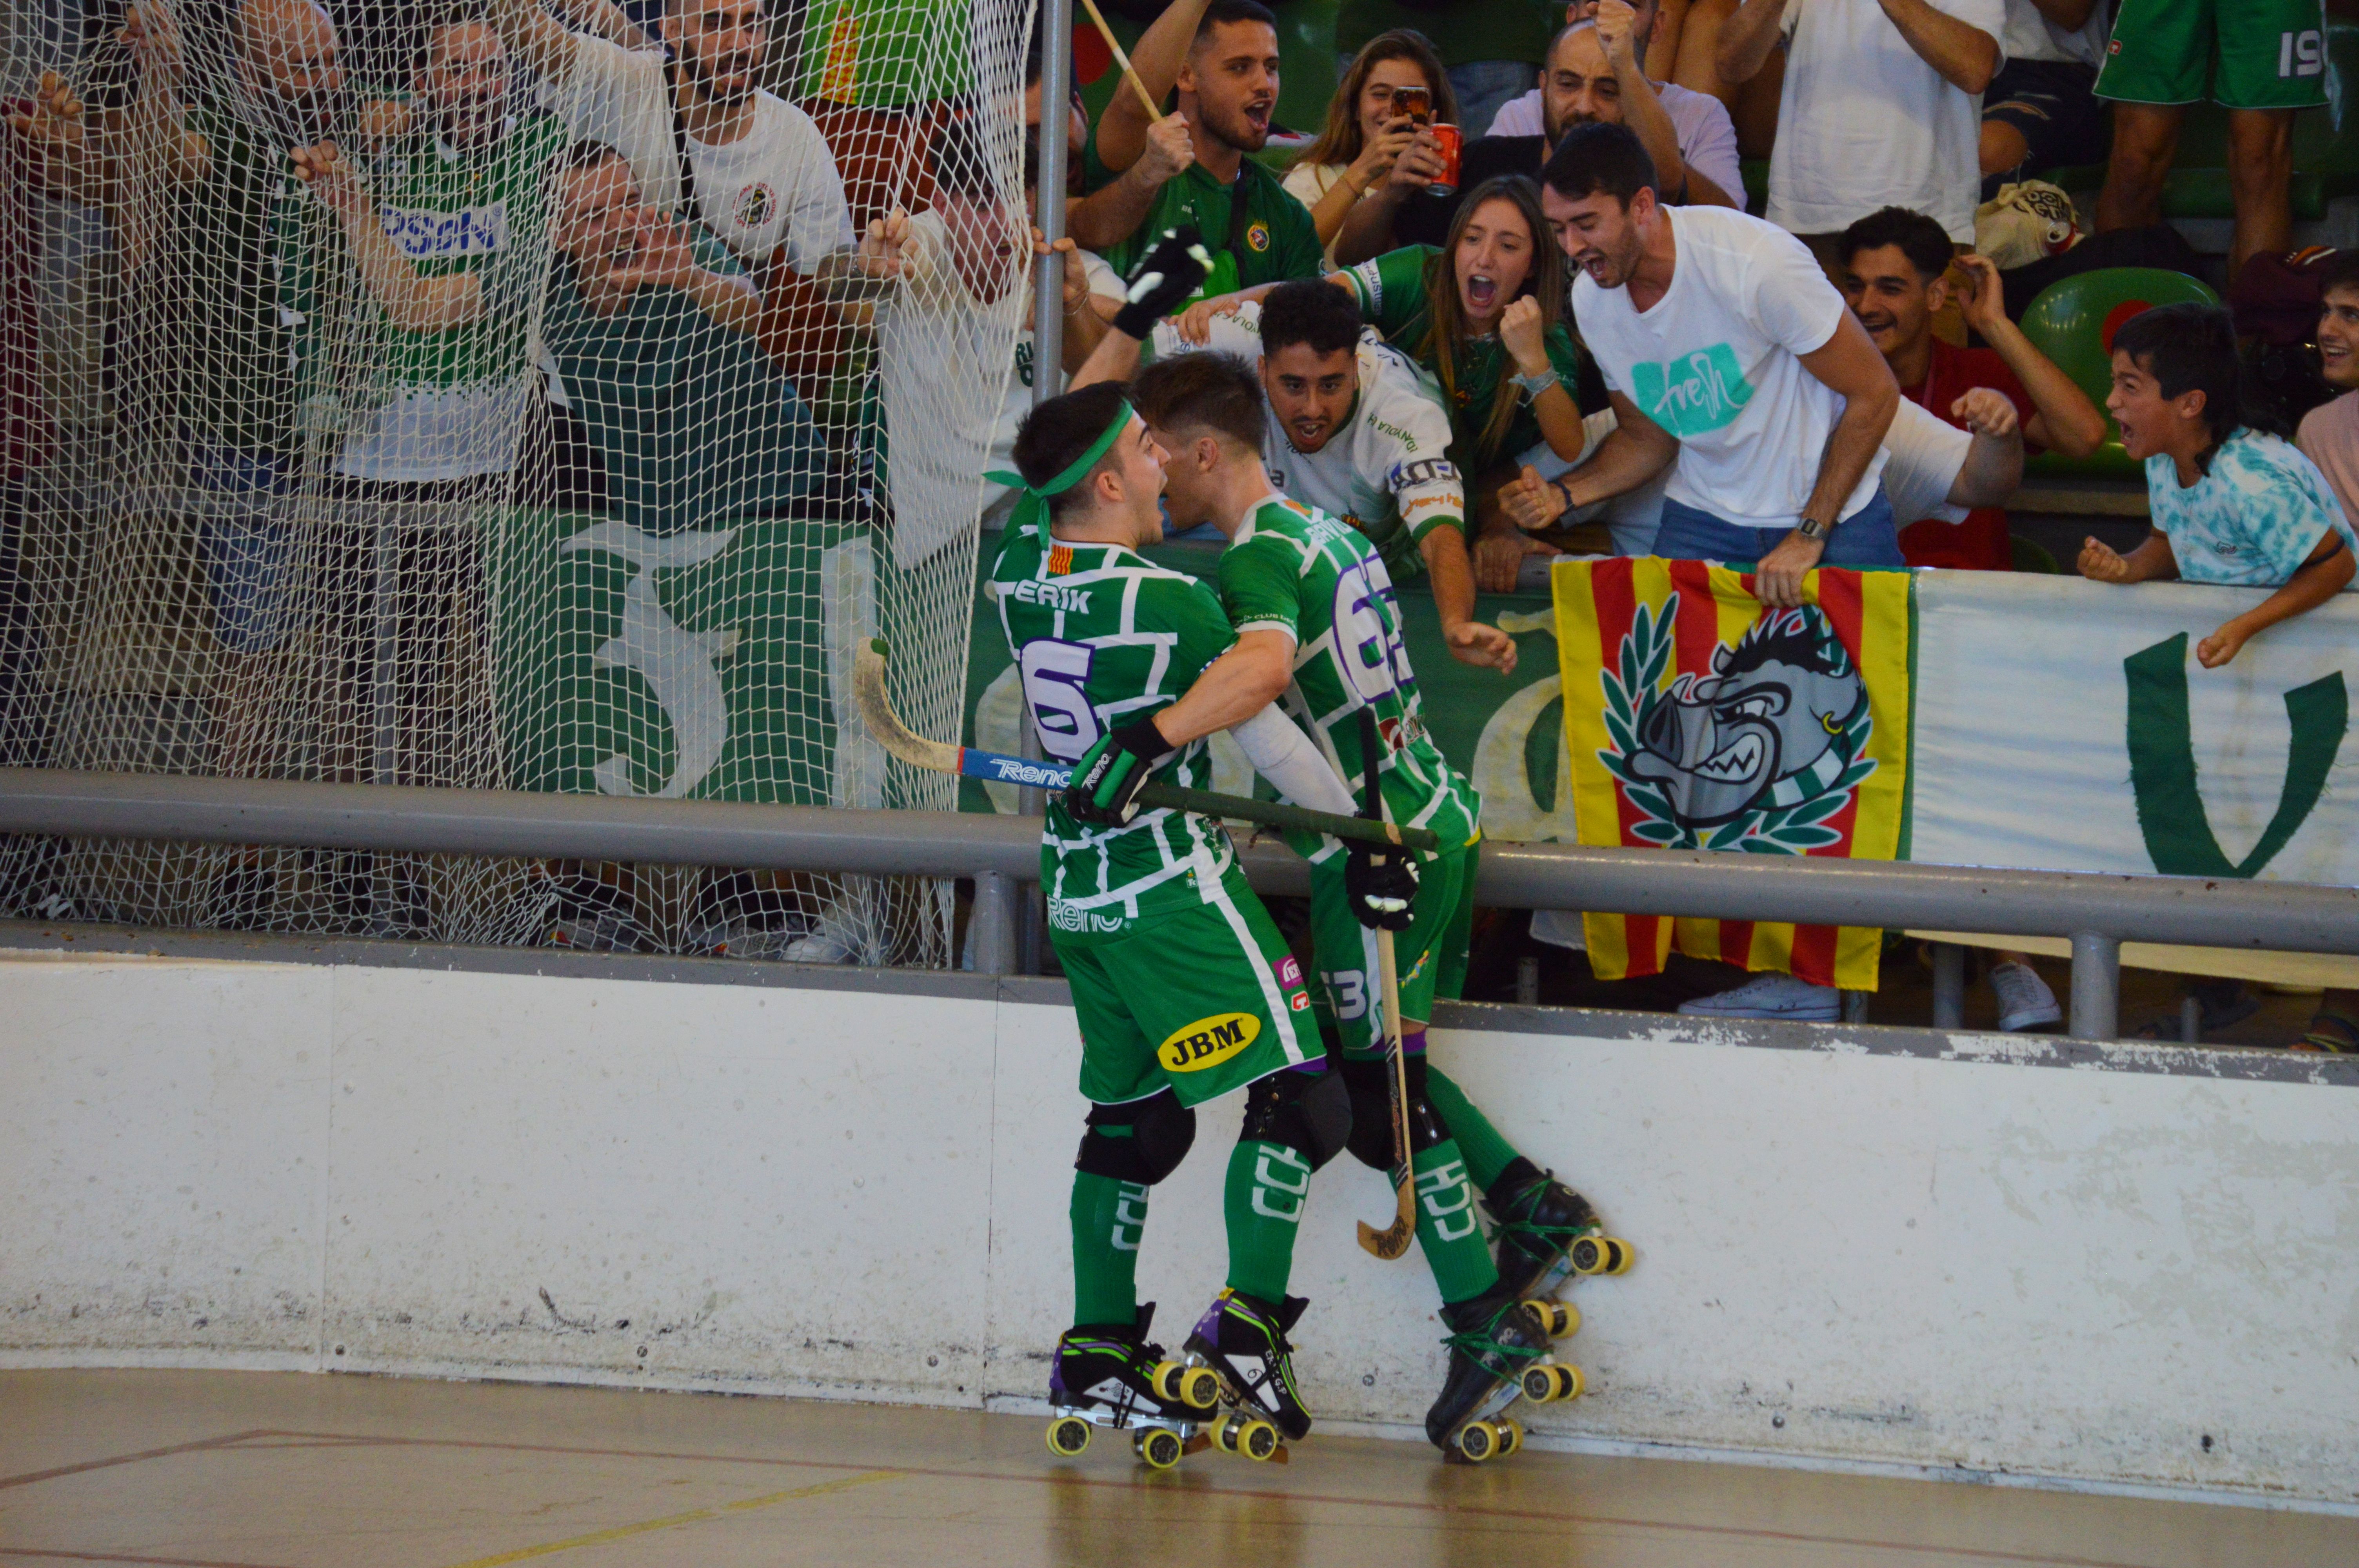 Celebració d'un gol a la final de la Supercopa de Catalunya a Can Xarau. FOTO: Nora MO